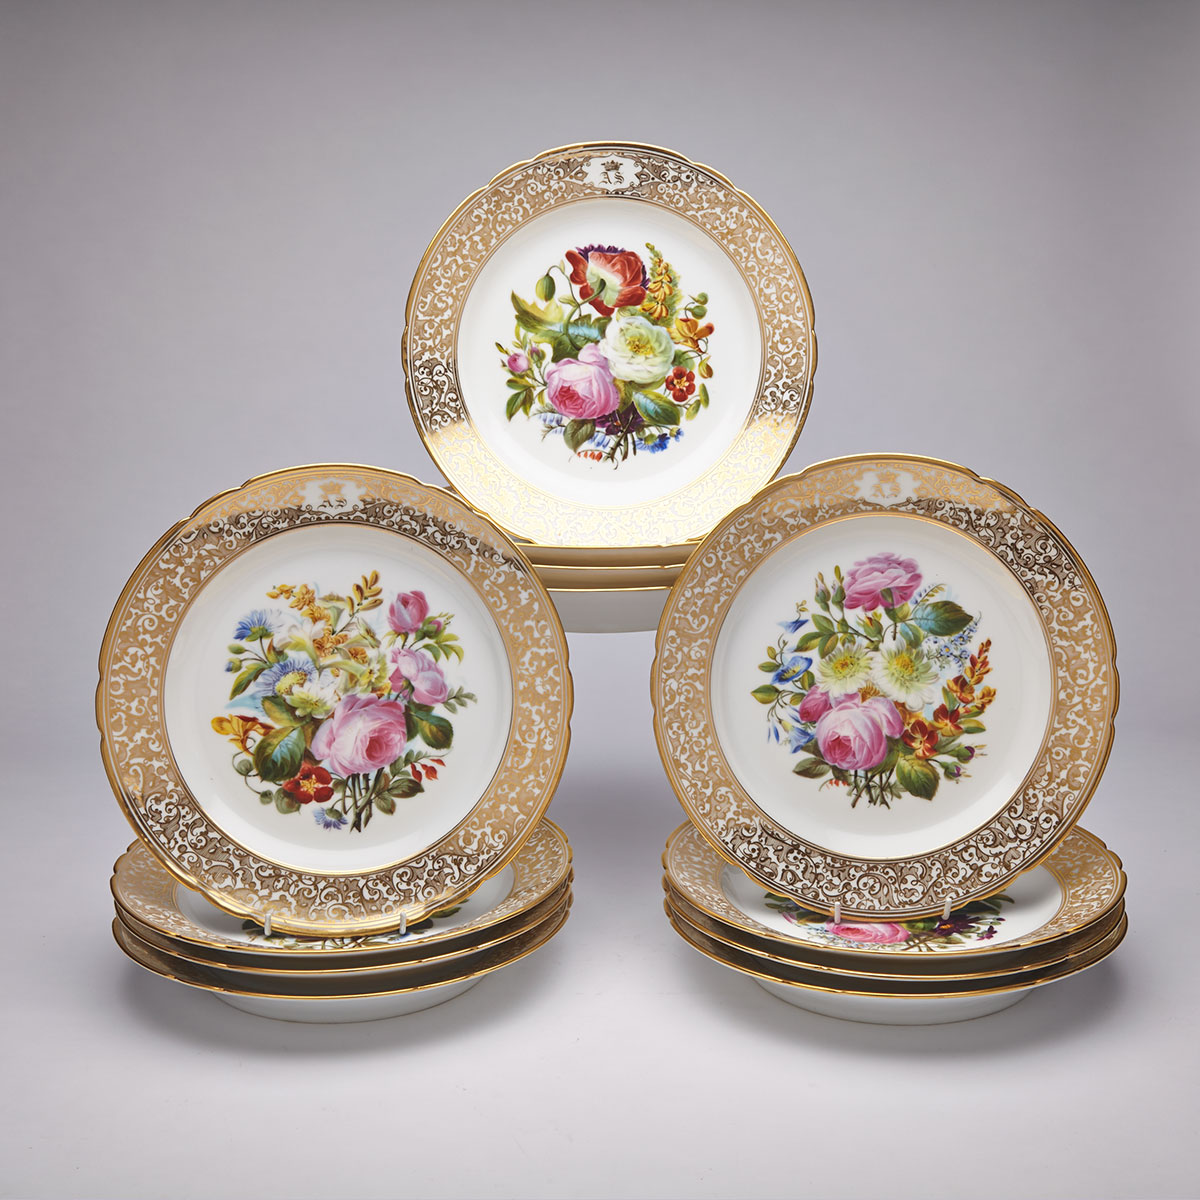 Set of Twelve Paris Porcelain Service Plates, c.1900